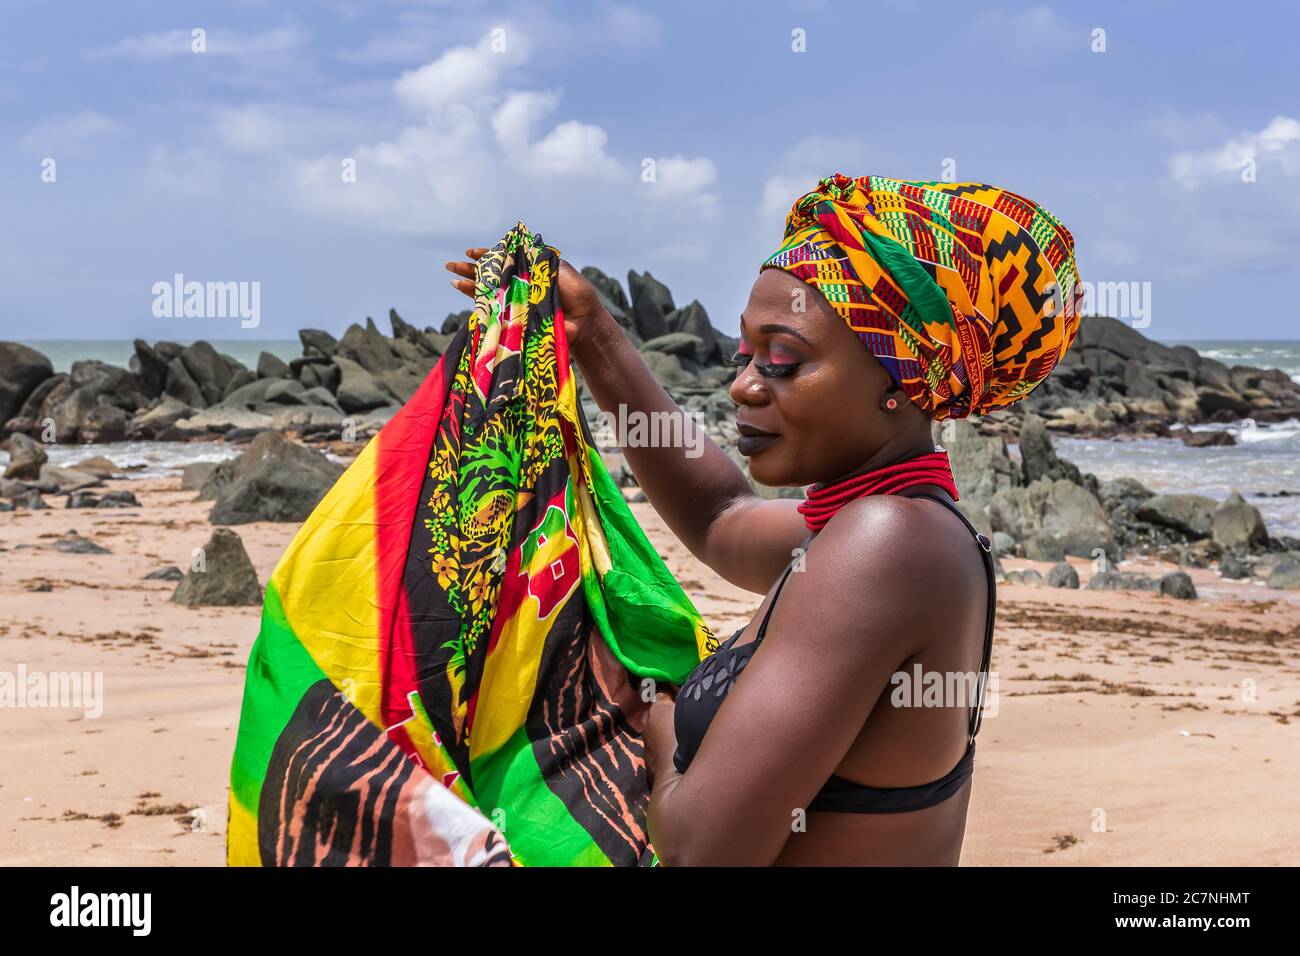 Ghana Femme sur la belle plage de l'Axim, située au Ghana Afrique de l'Ouest. Adresse aux couleurs traditionnelles d'Afrique. Banque D'Images